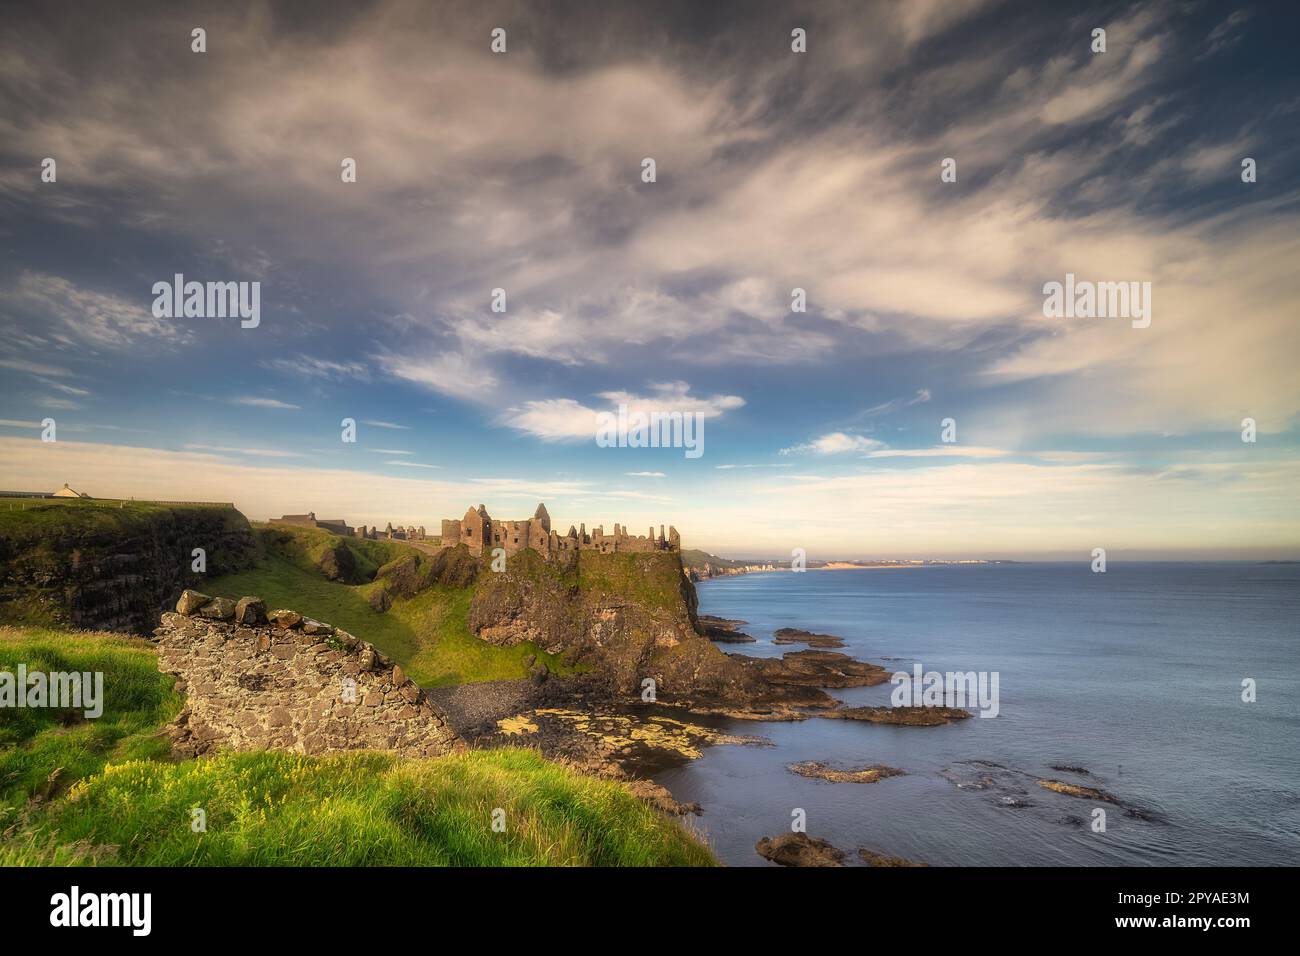 Ruines du château de Dunluce situé sur le bord de la falaise, Irlande du Nord Banque D'Images